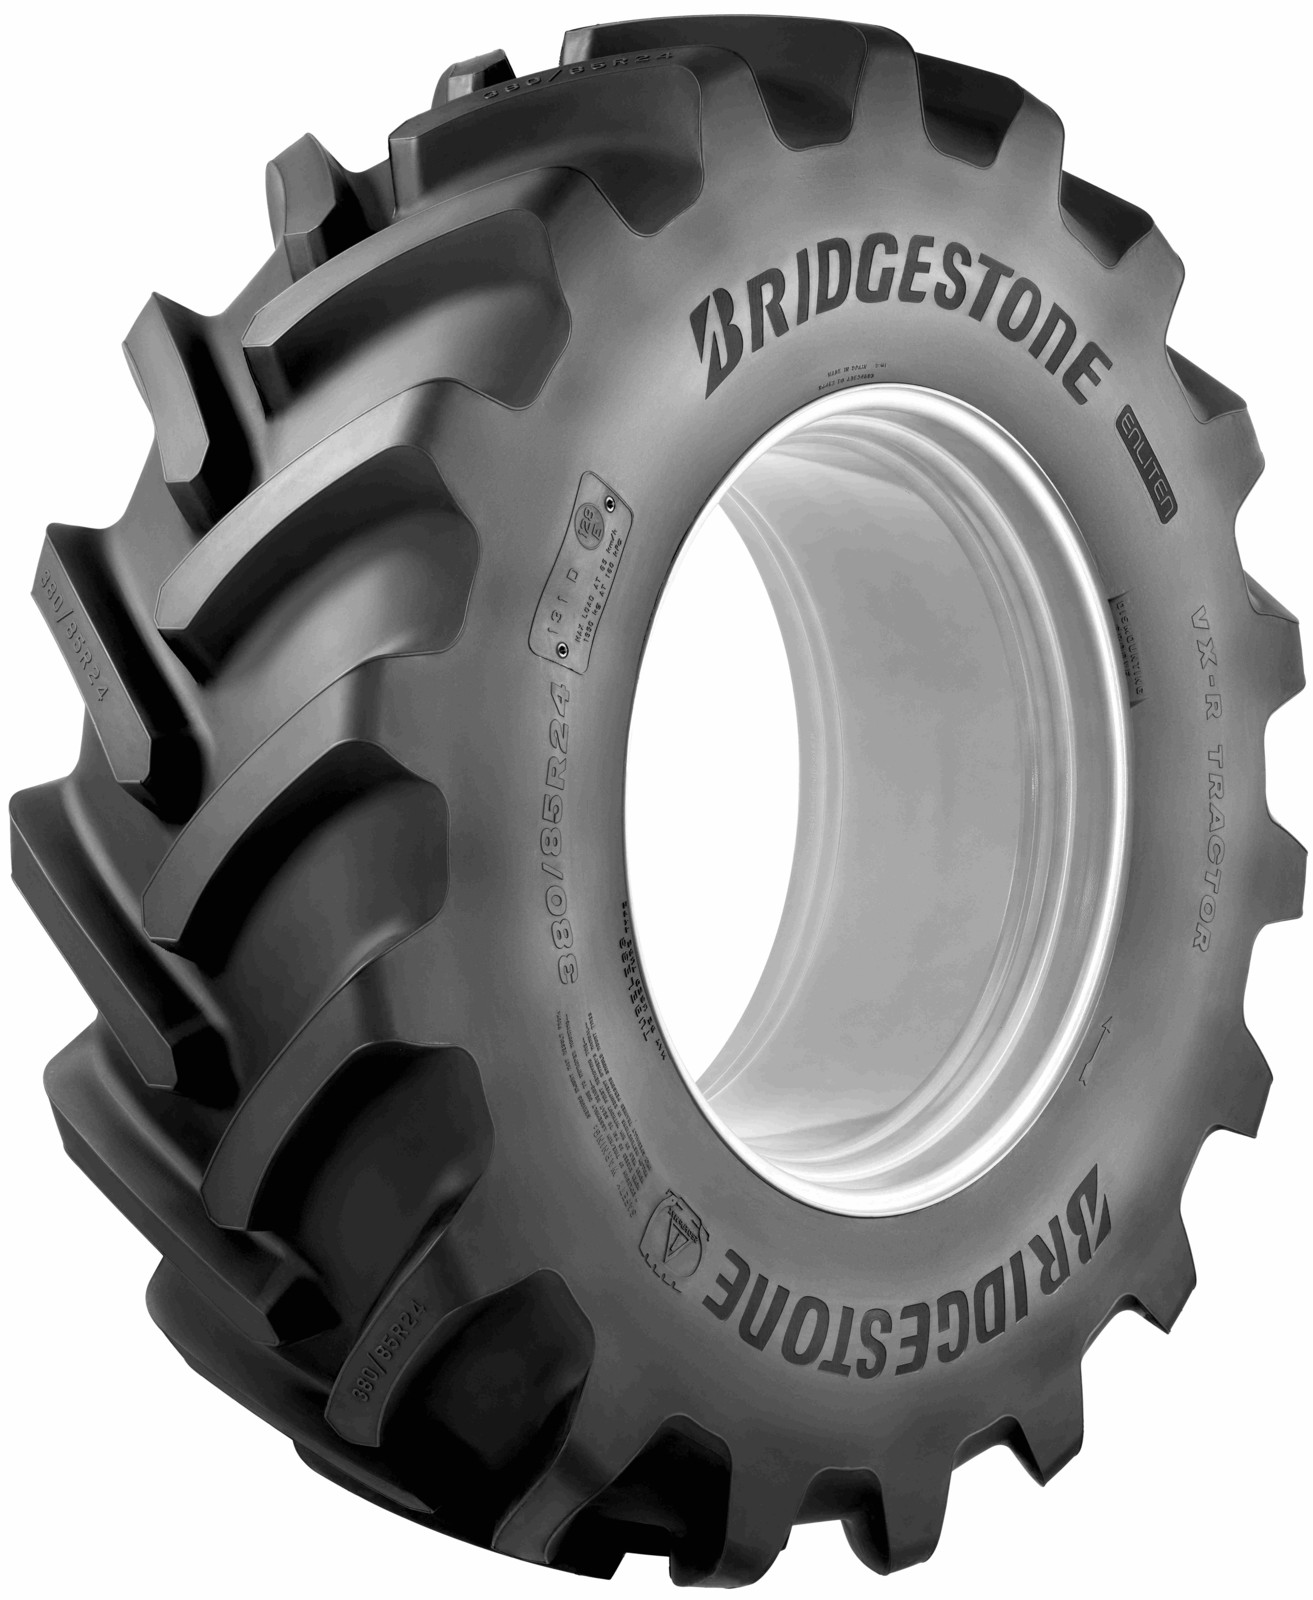 Die Bridgestone Reifenserie VX-R Tractor soll auf alle Traktoren passen und mit jeder Marke kombinierbar sein.